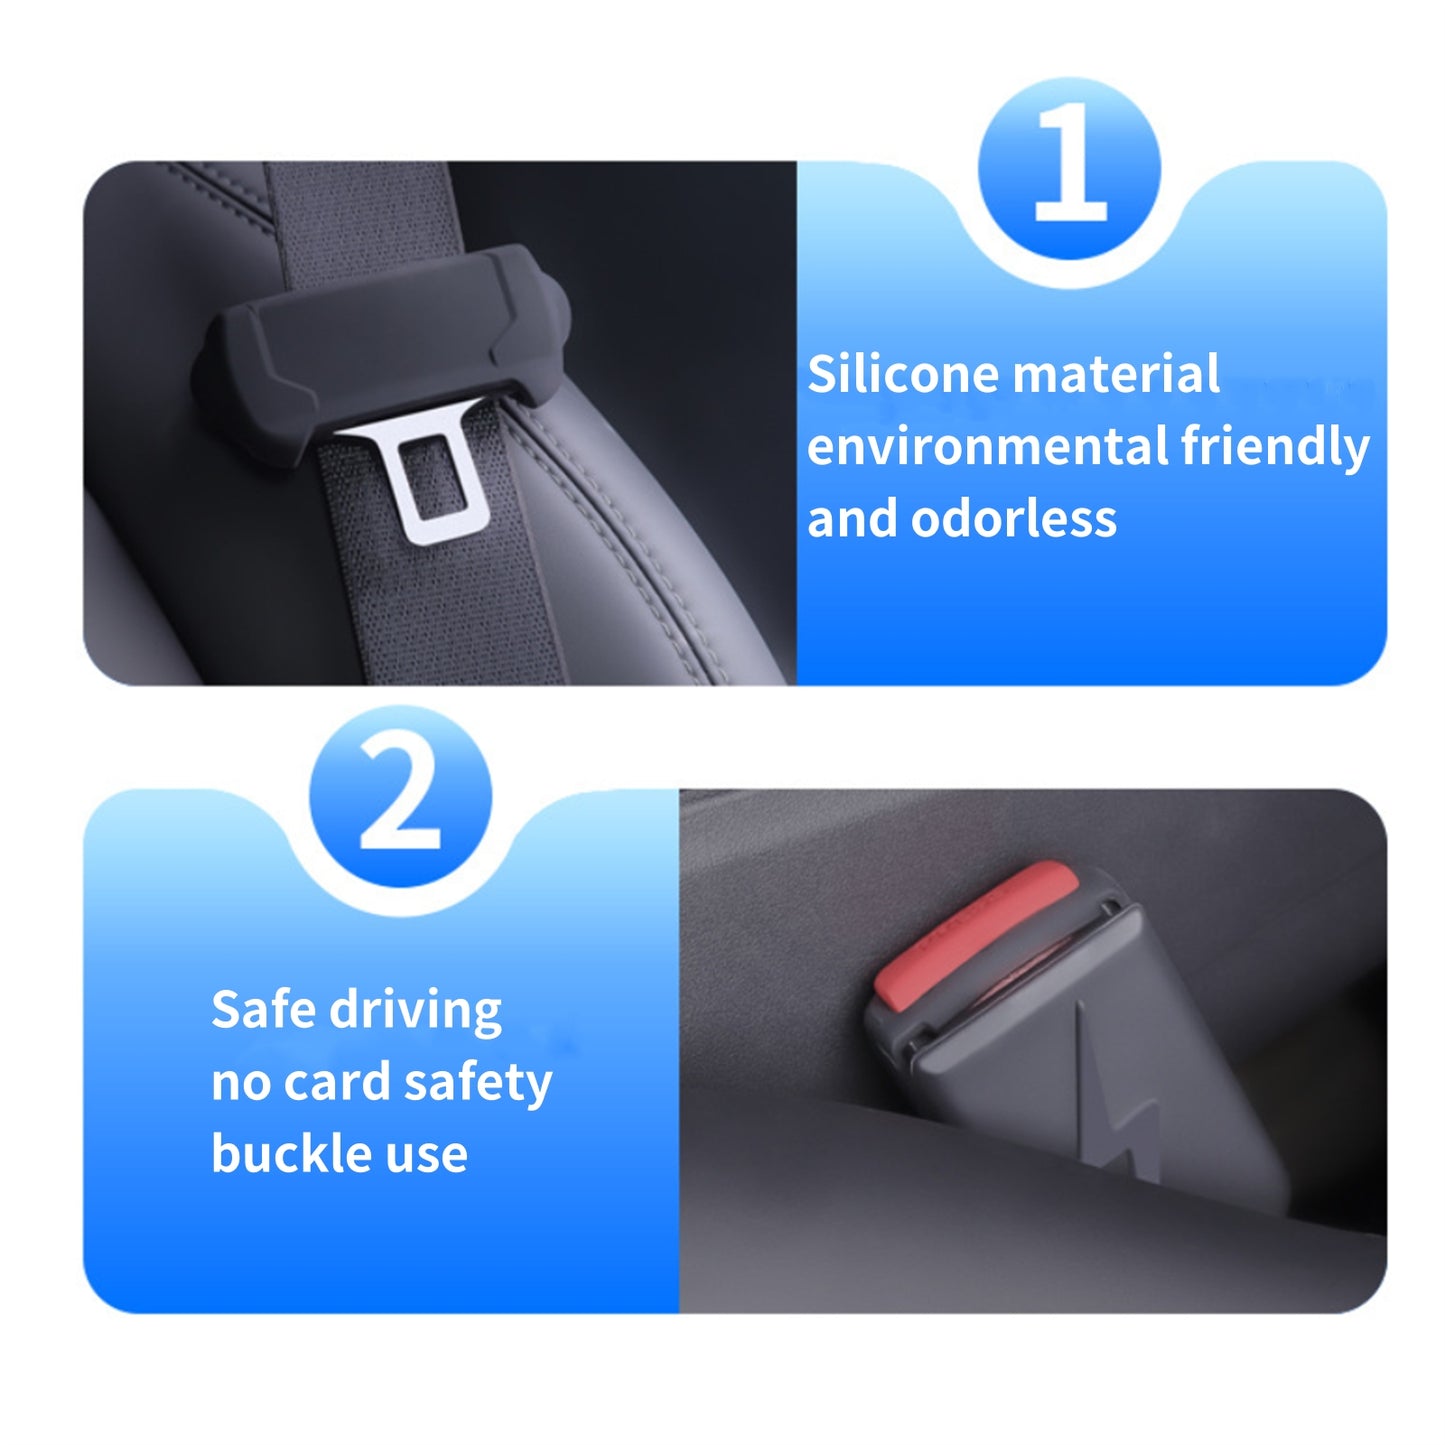 Tesla Seat Belt Protector Set Hook Buckle Cover For Model 3/Y